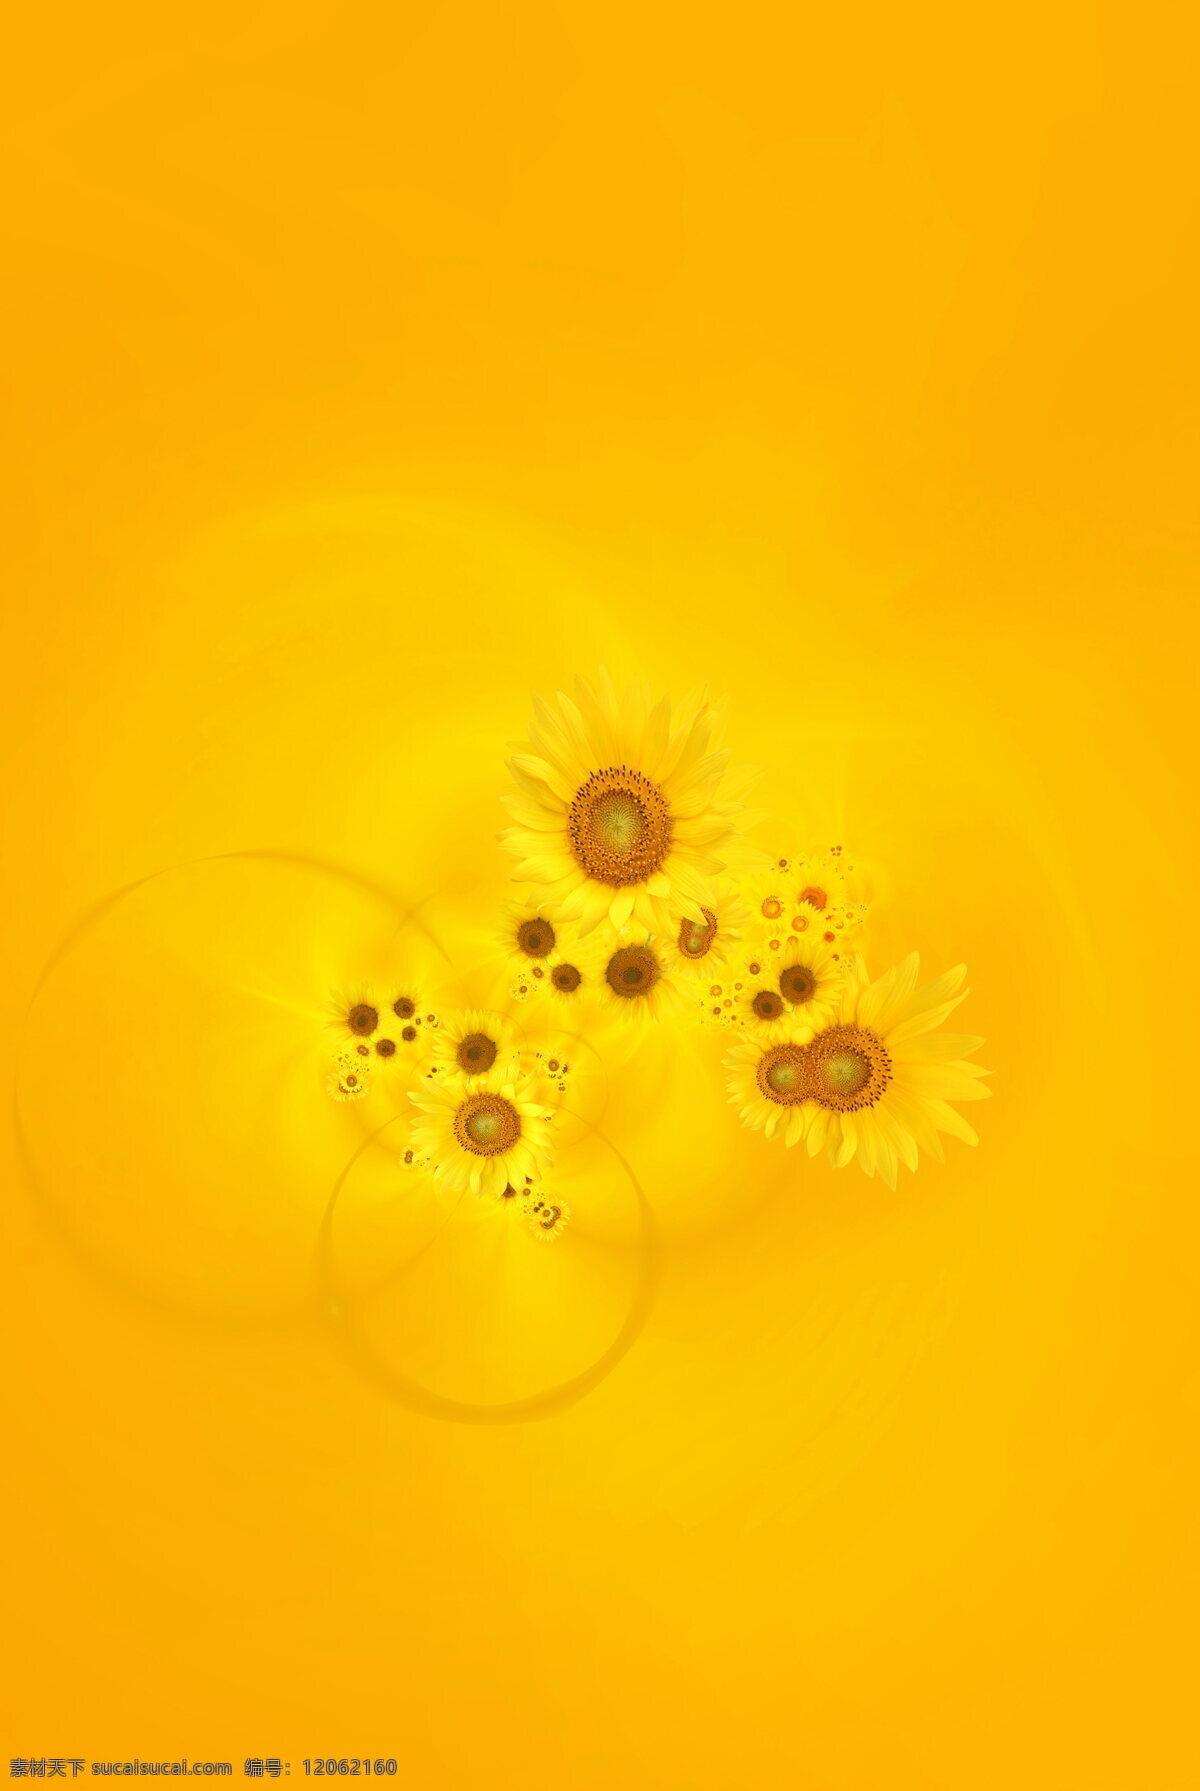 向日葵背景 花朵背景 花朵边框 黄色展板背景 黄色展板底图 黄色展板底纹 黄色底纹 黄色背景 背景